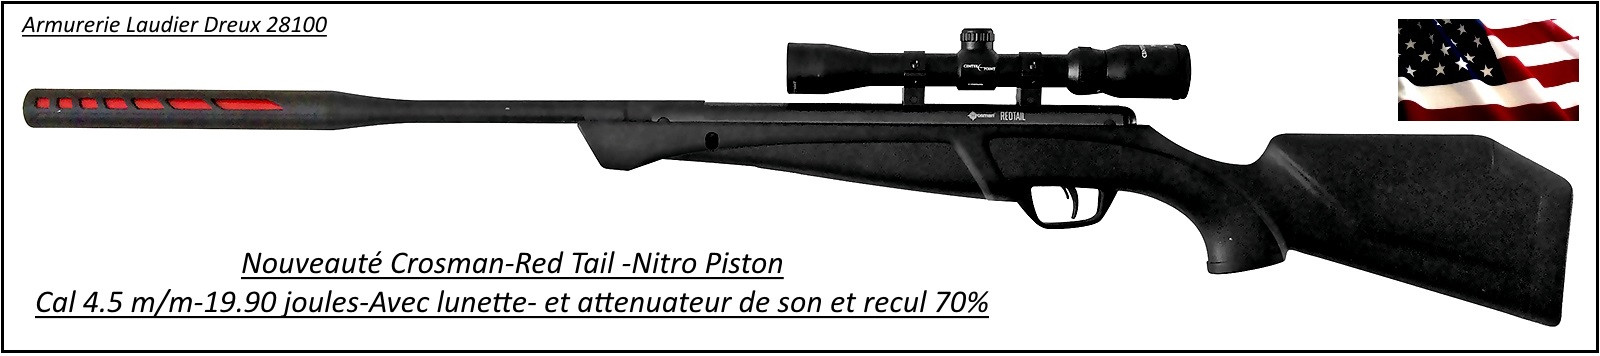 Carabine-air comprimé-Crosman-Red Tail-NP-Calibre 4.5m/m-Crosse synthétique-19.90 joules-+kit lunette 3x9x32-Nitro piston-Promotion-Ref 27634